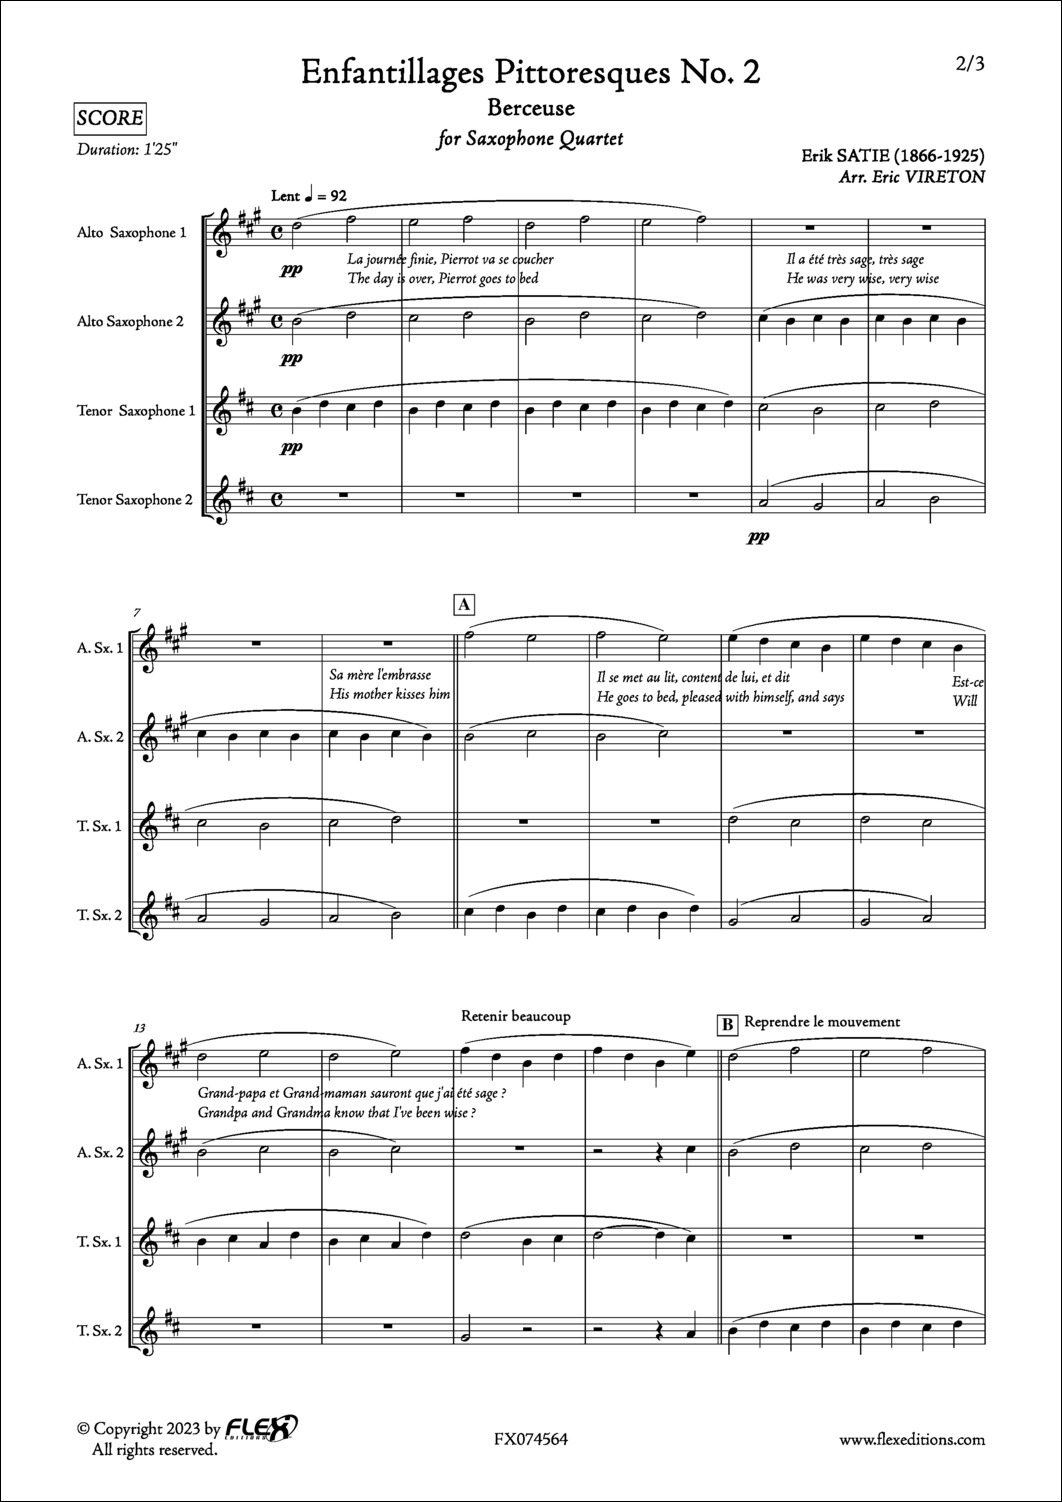 Enfantillages Pittoresques No. 2 - Berceuse - E. SATIE - <font color=#666666>SAxophone Quartet</font>